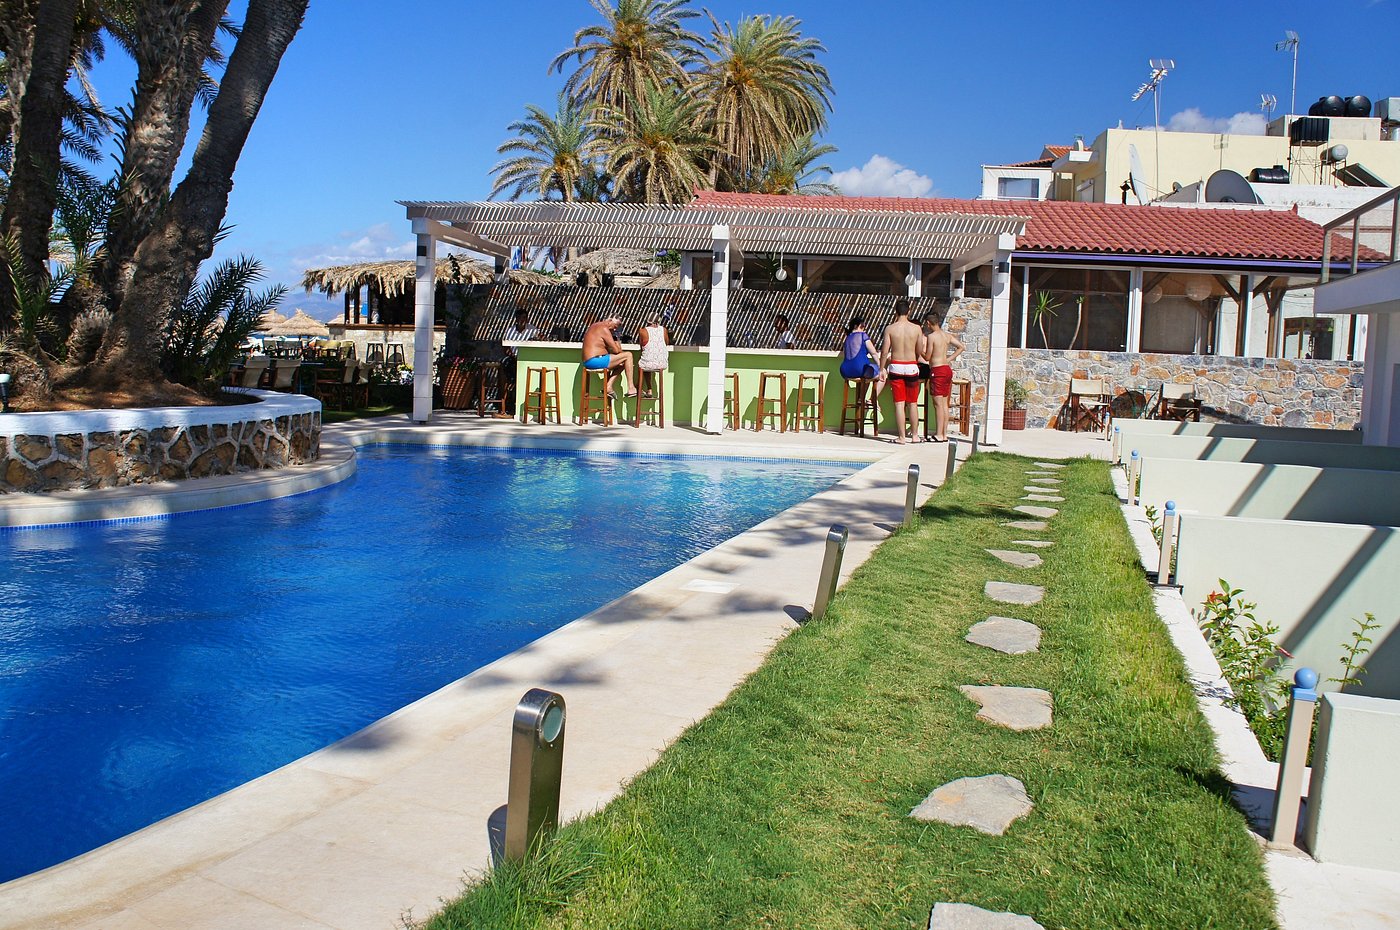 Palm Beach Hotel - Pool: Fotos und Bewertungen - Tripadvisor